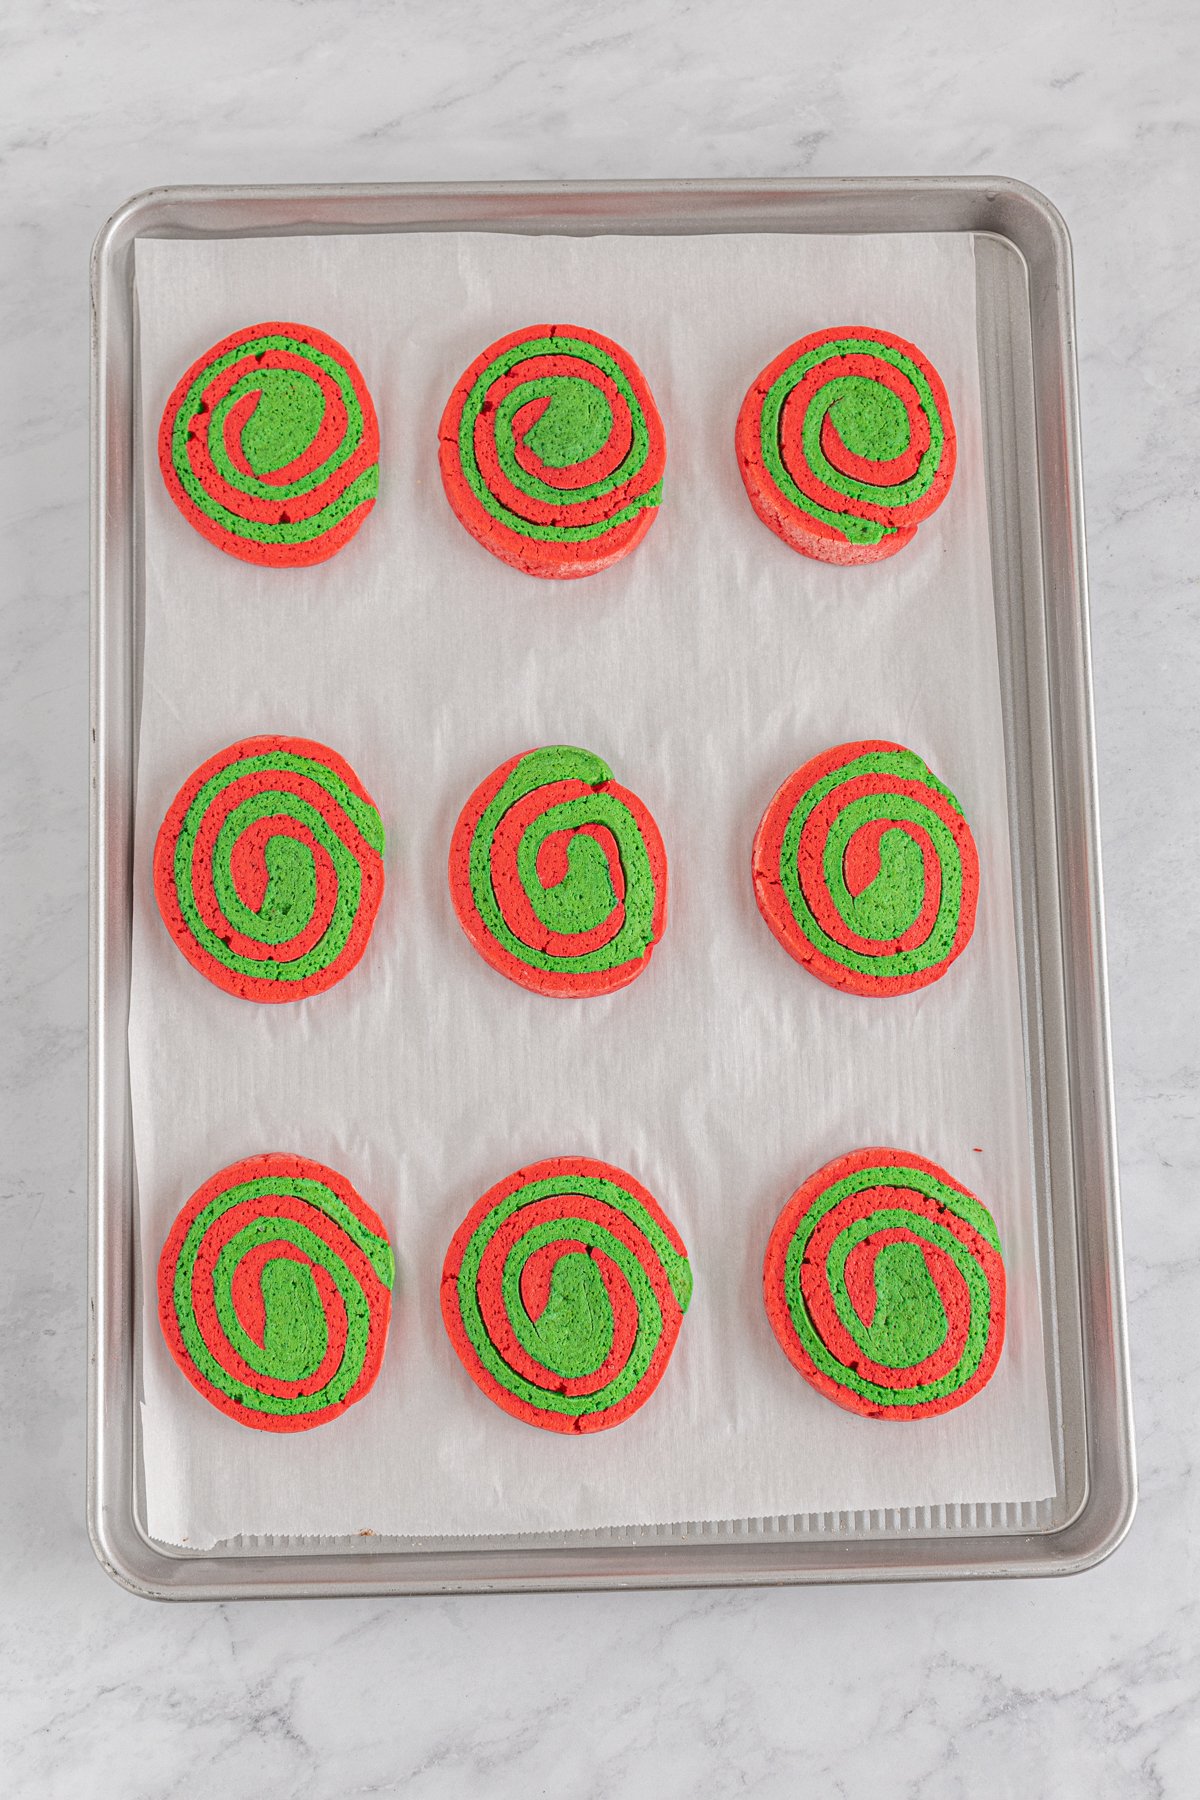 unbaked pinwheel cookies on a baking sheet